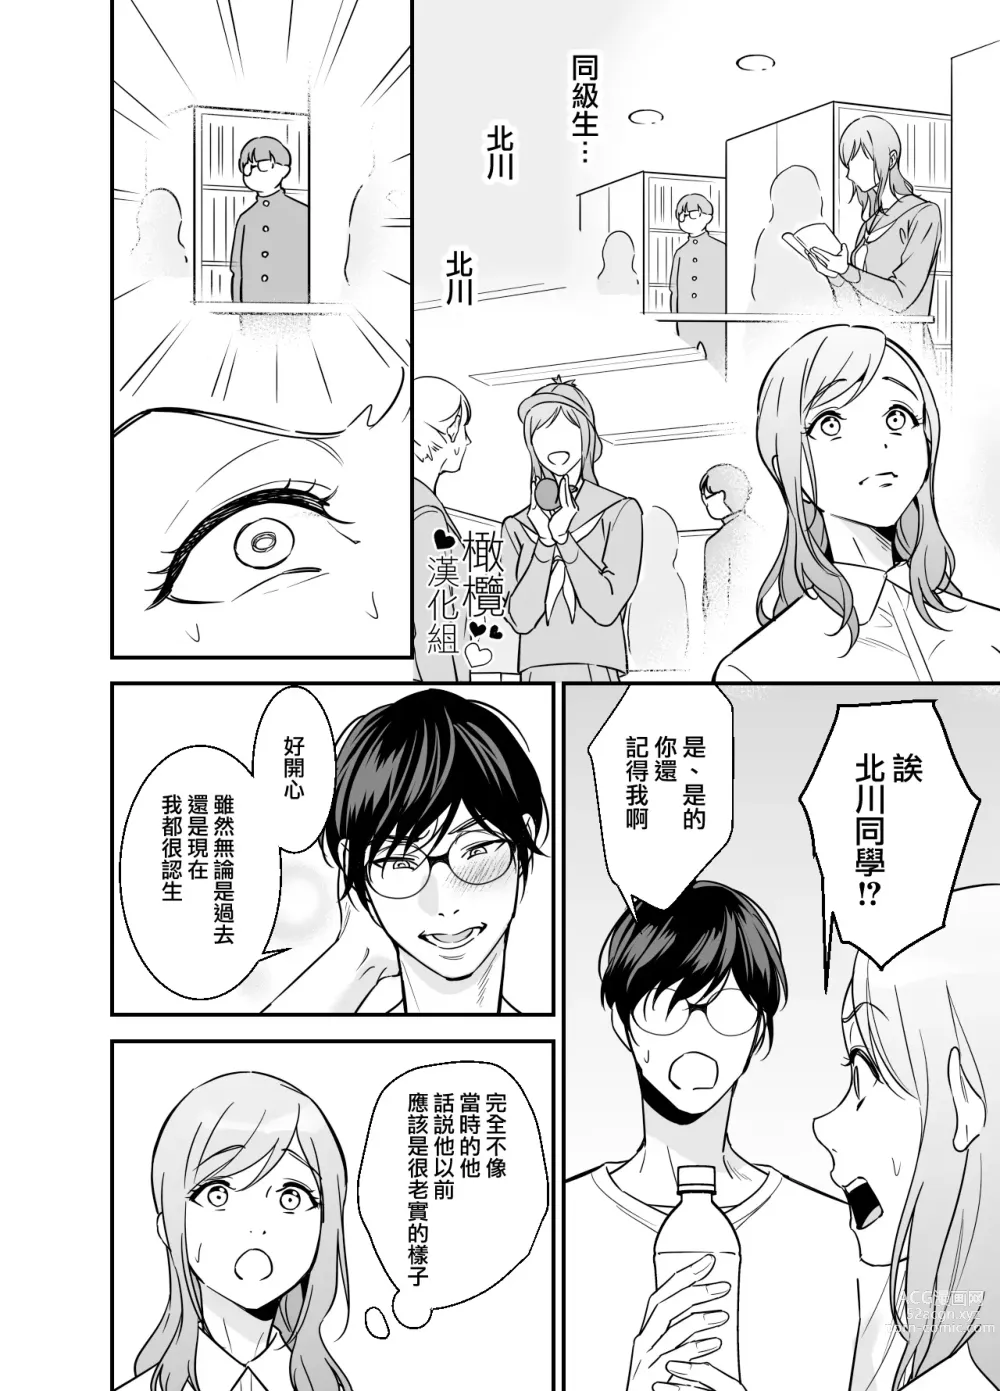 Page 59 of doujinshi 处男小说家和家政妇小姐